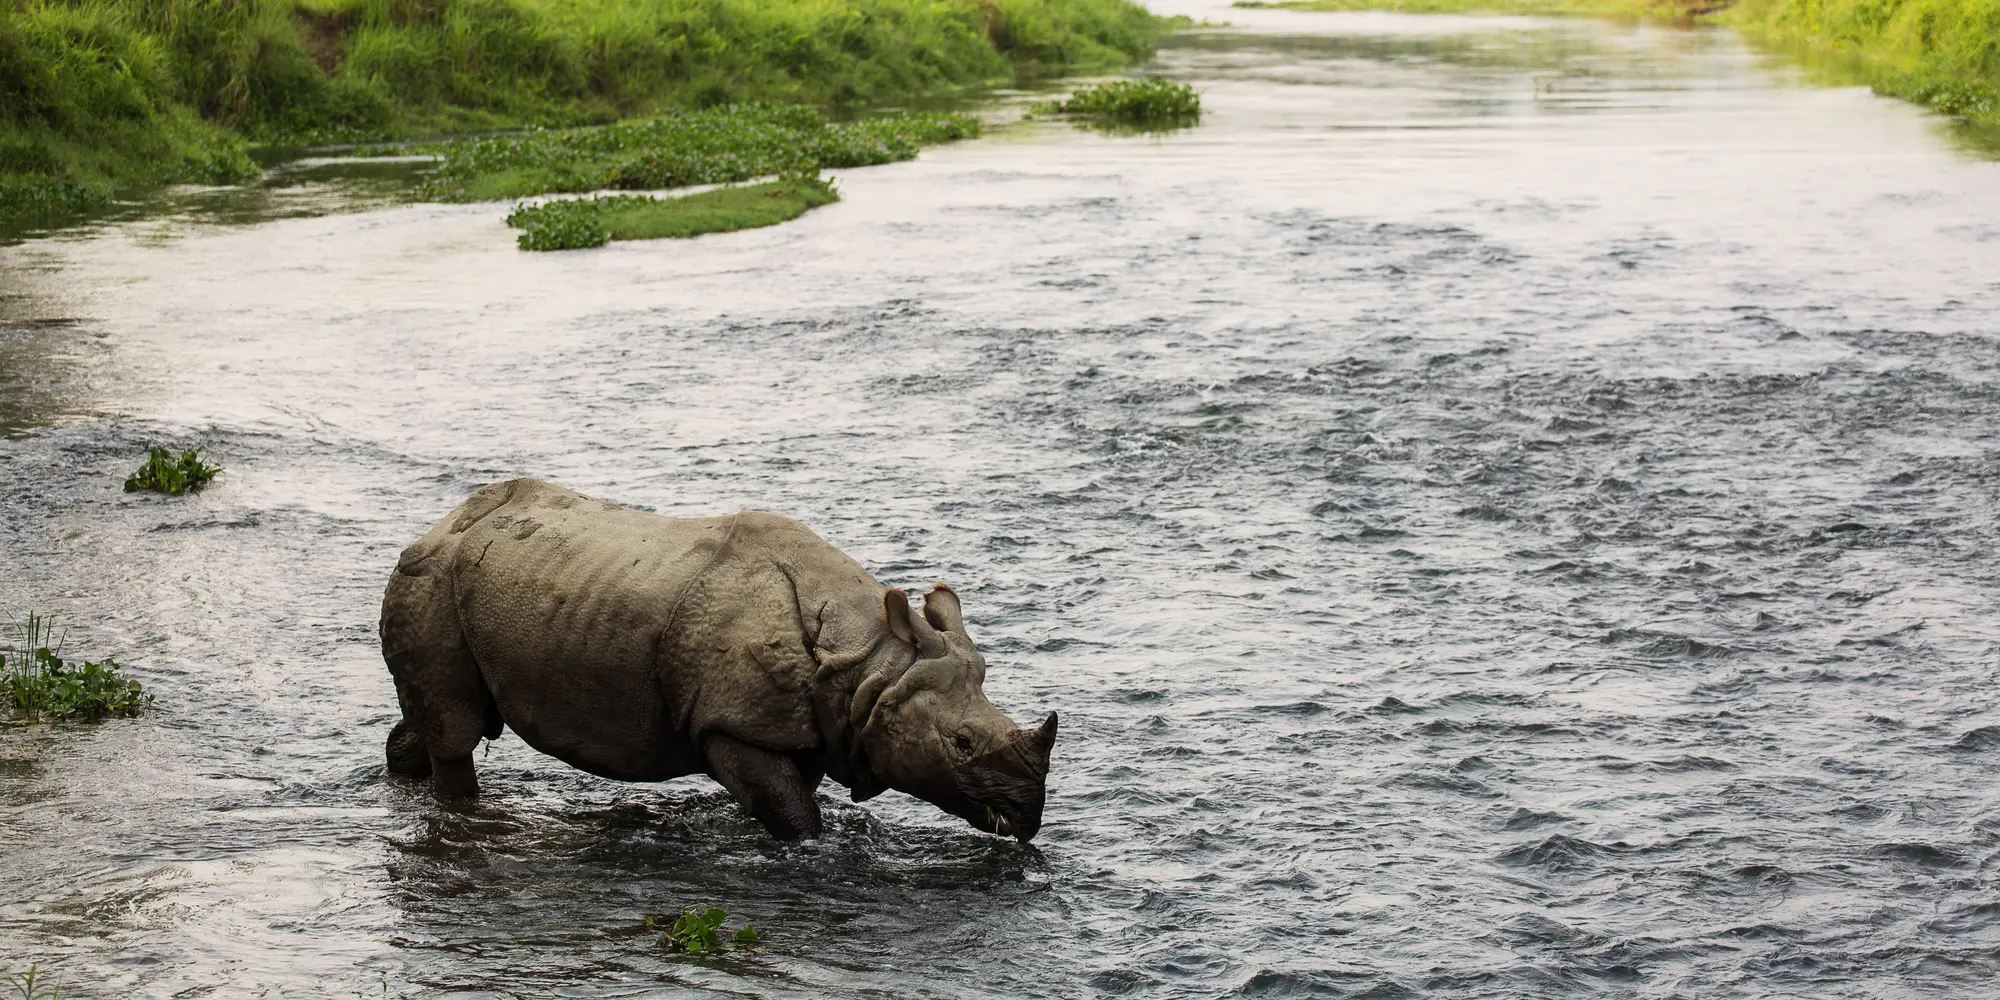 A rhino in a river.